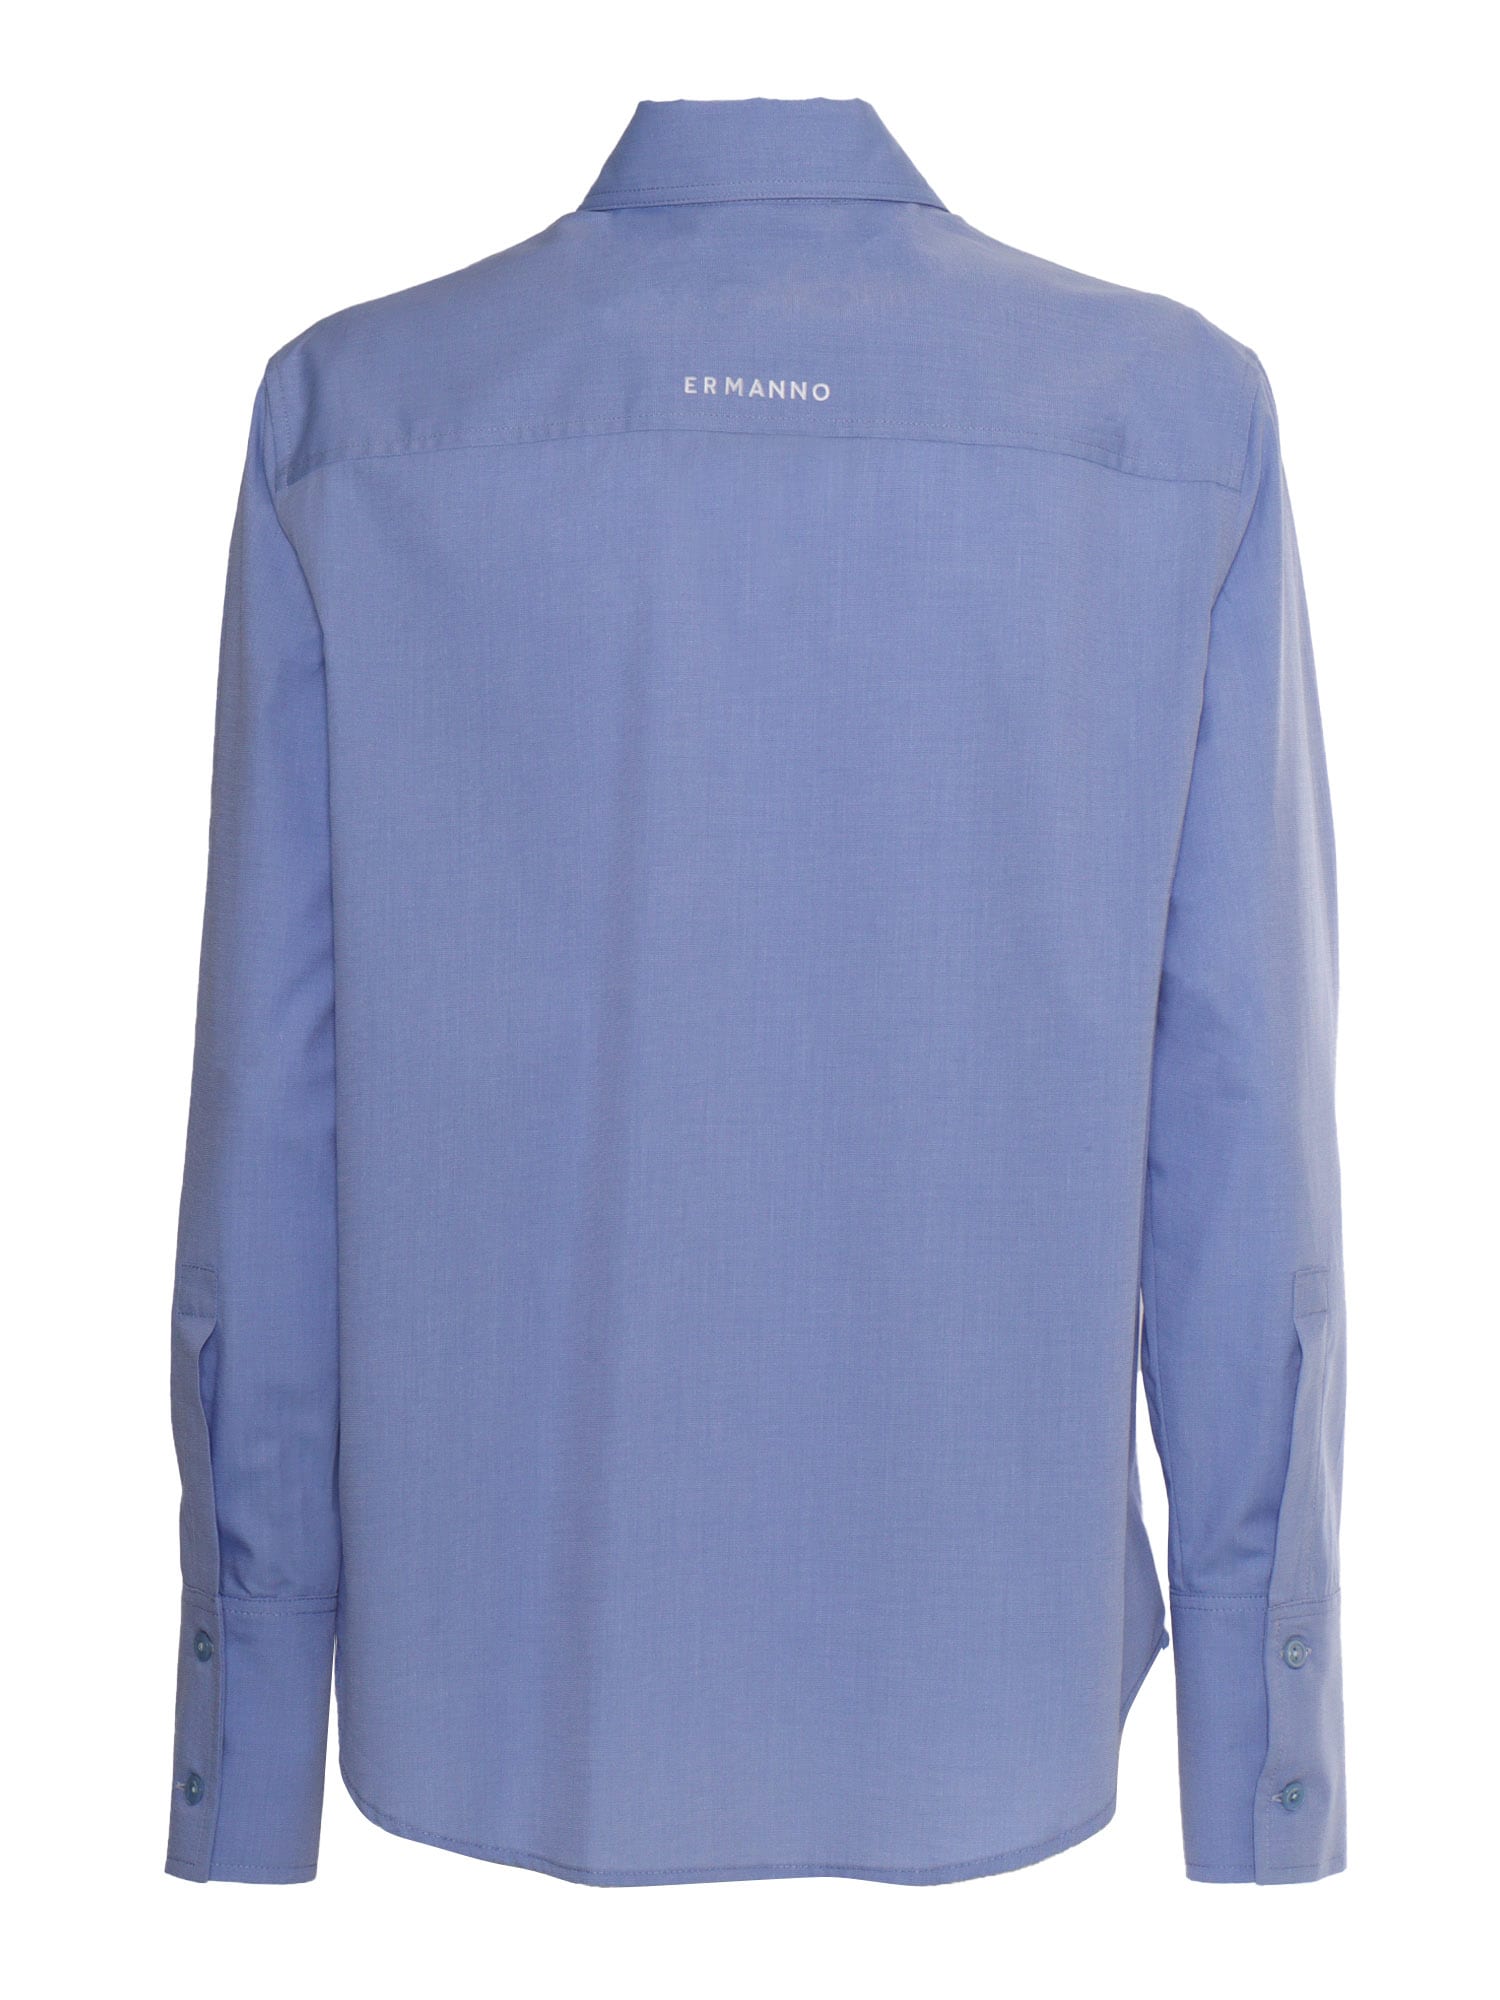 Shop Ermanno Ermanno Scervino Light Blue Shirt